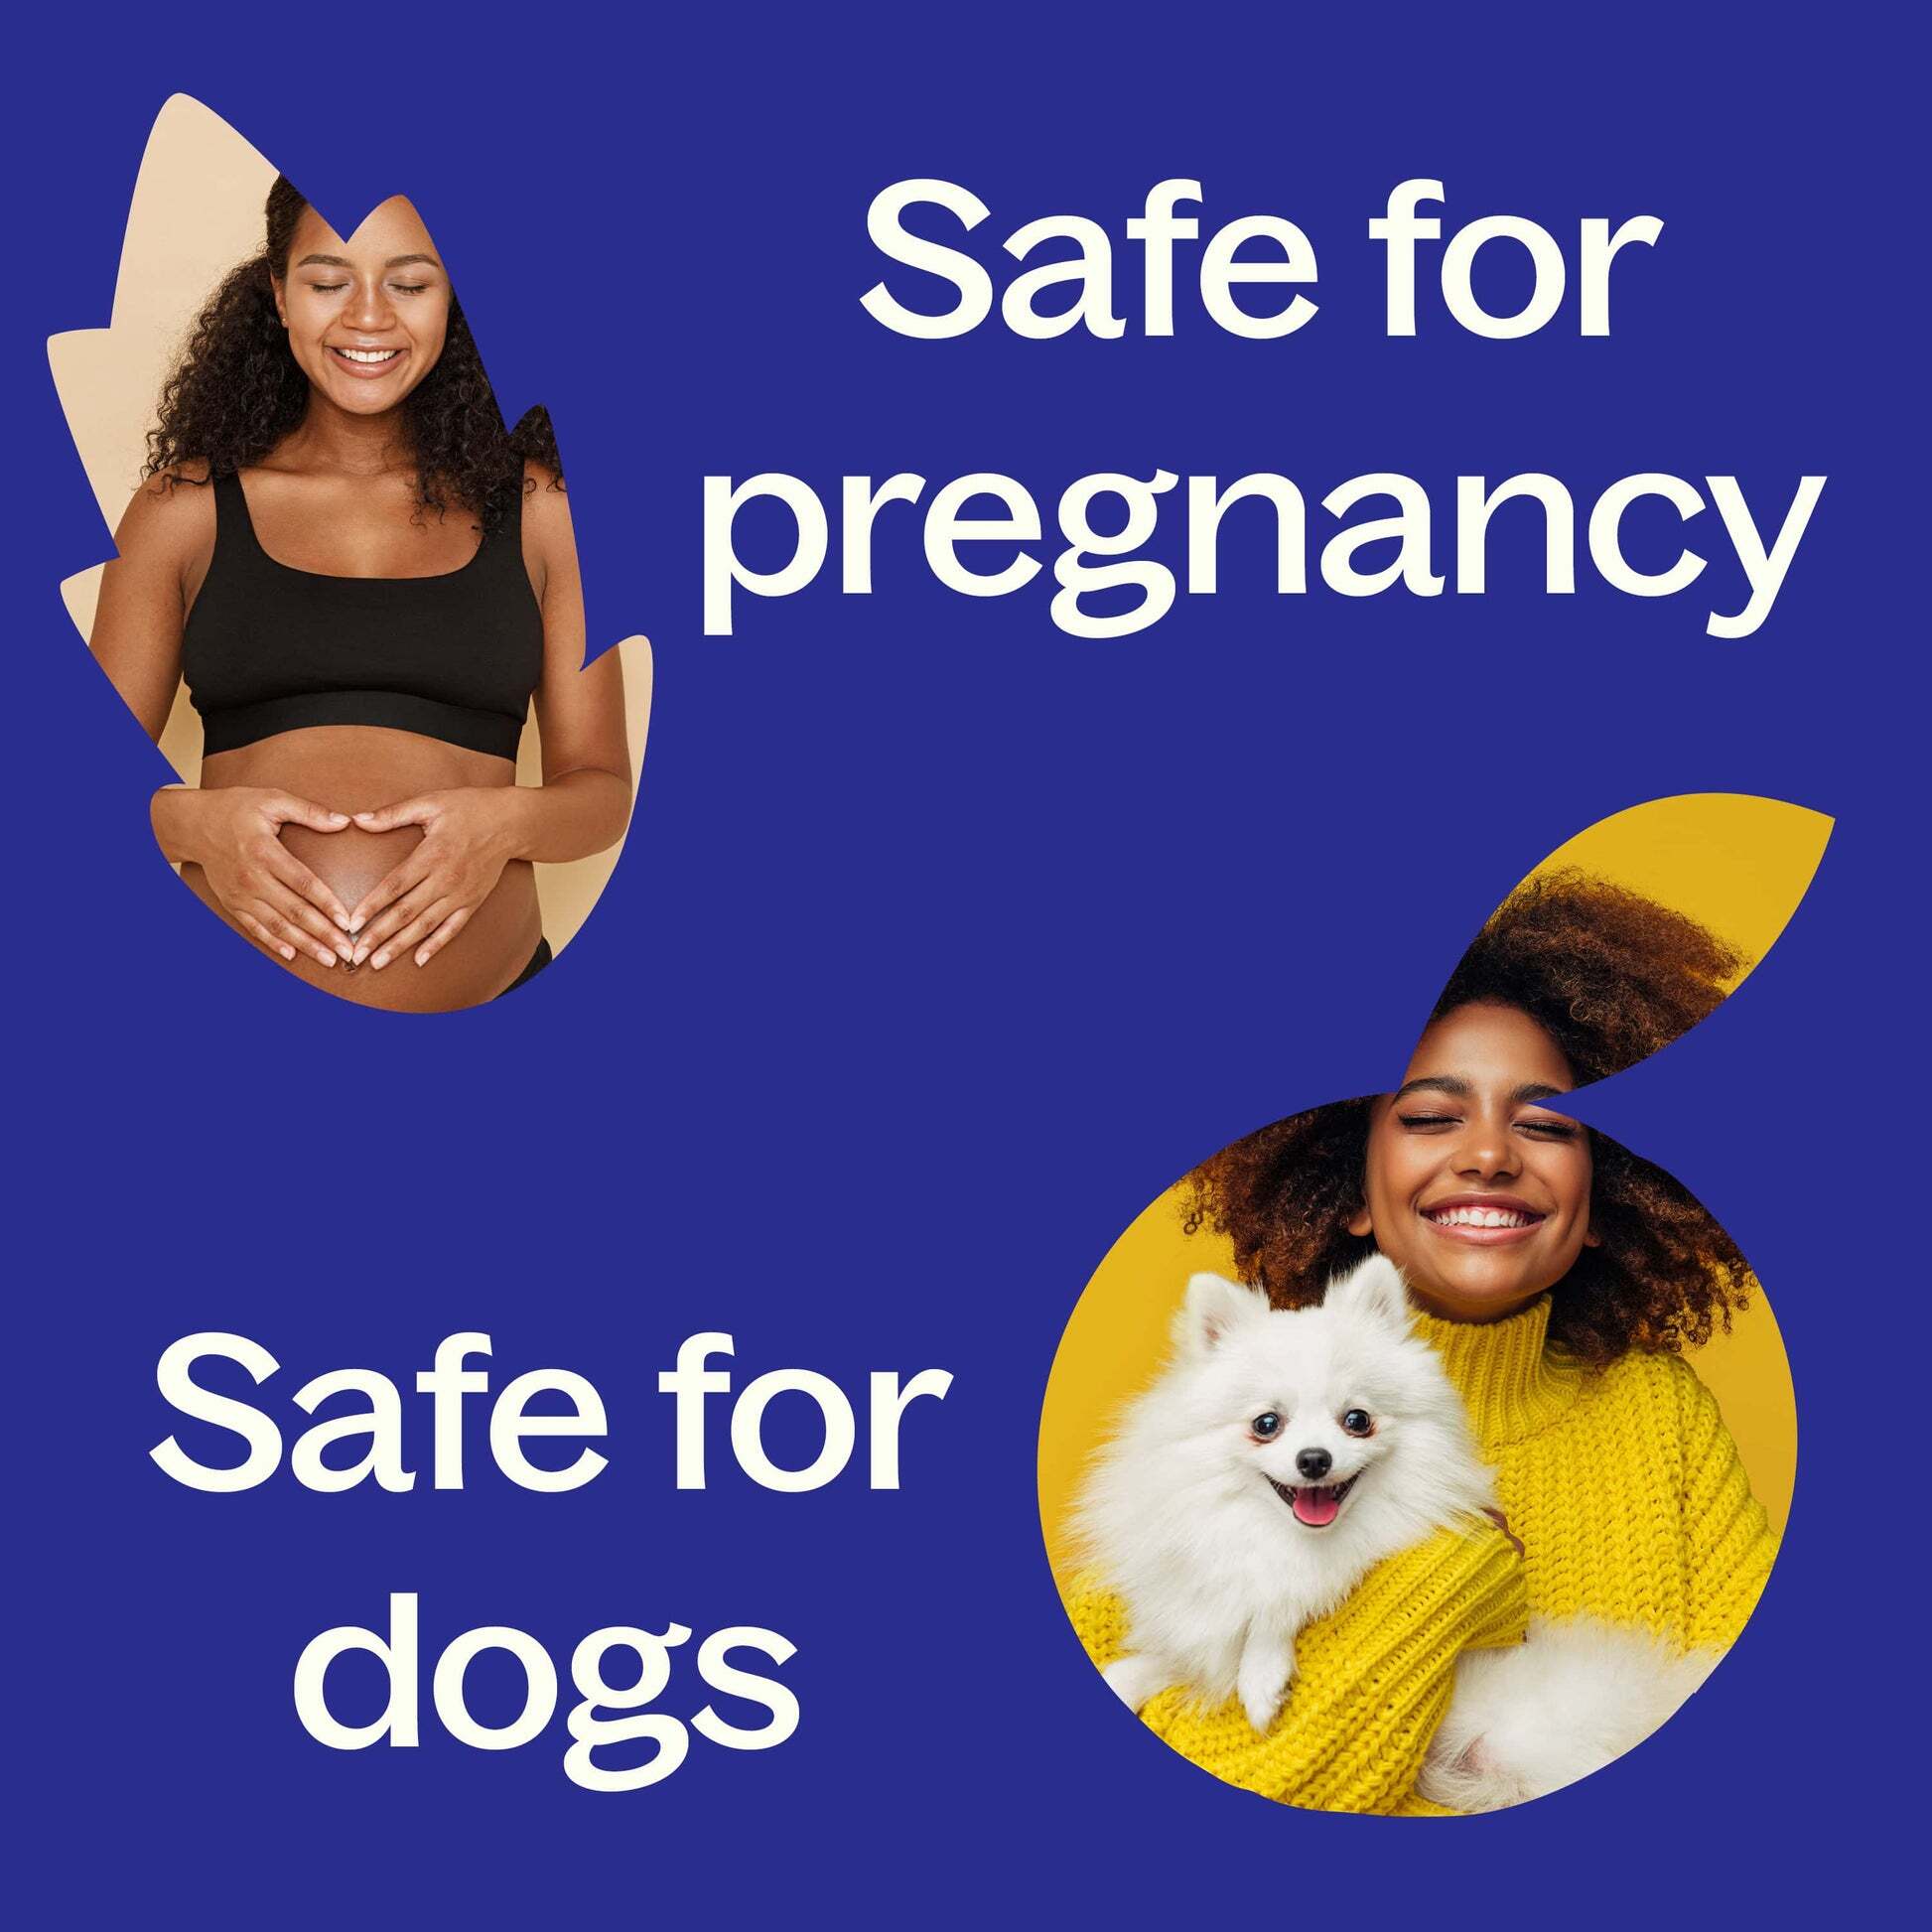 Safety-Pregnancy_Dogs-min_1946x